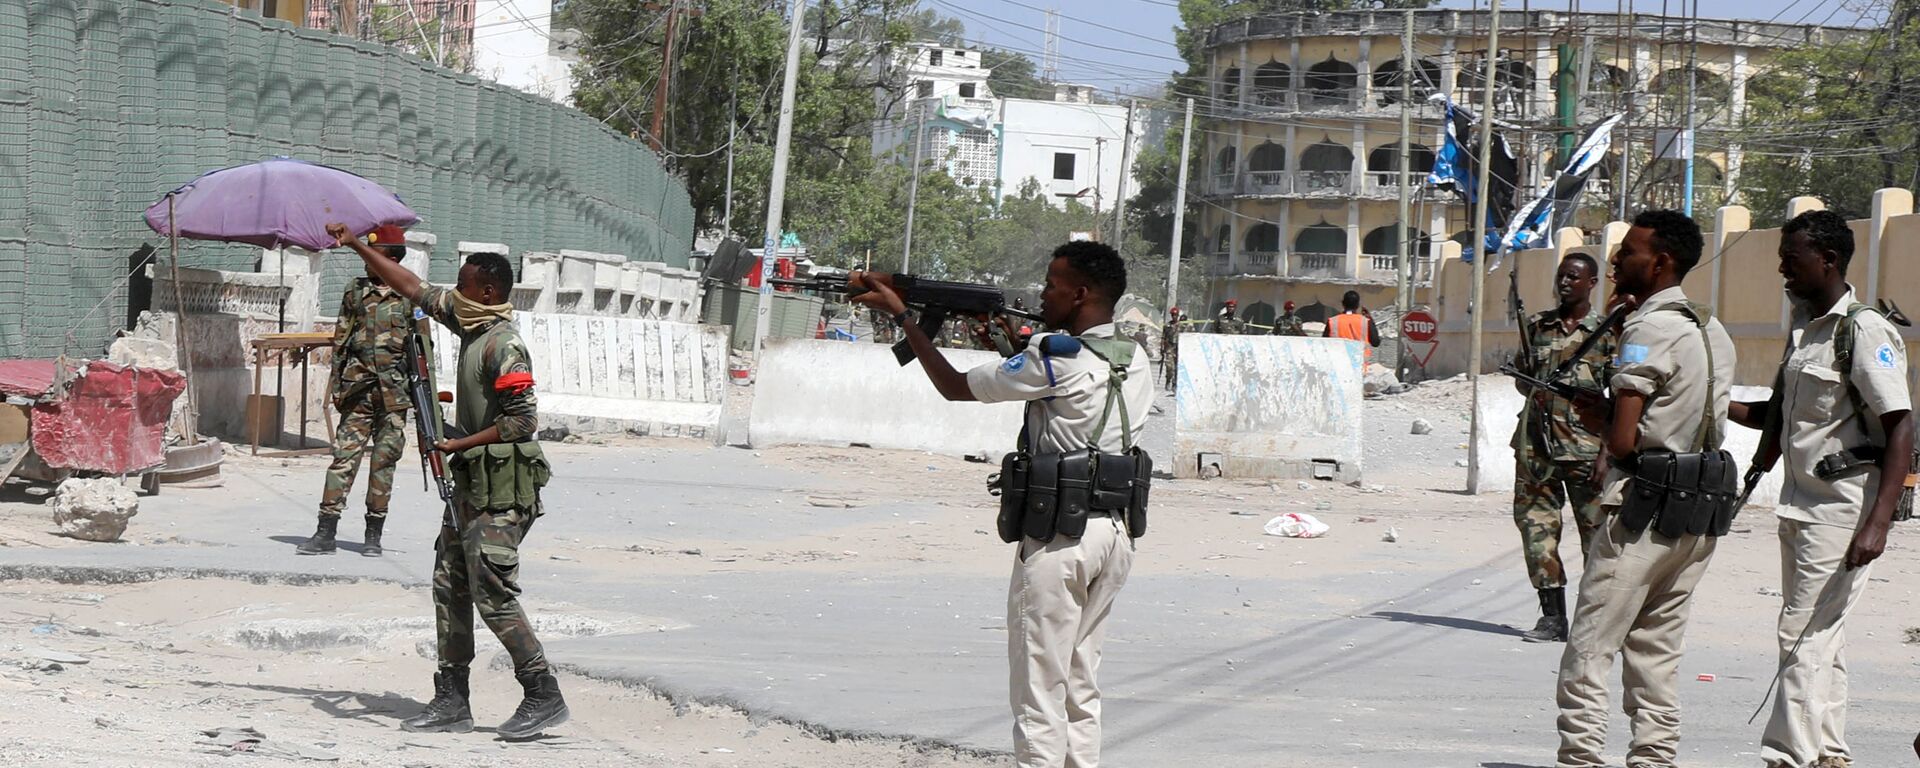 قوات الأمن الصومالية تؤمن الشارع بالقرب من موقع انفجار في مقديشو - سبوتنيك عربي, 1920, 26.02.2021